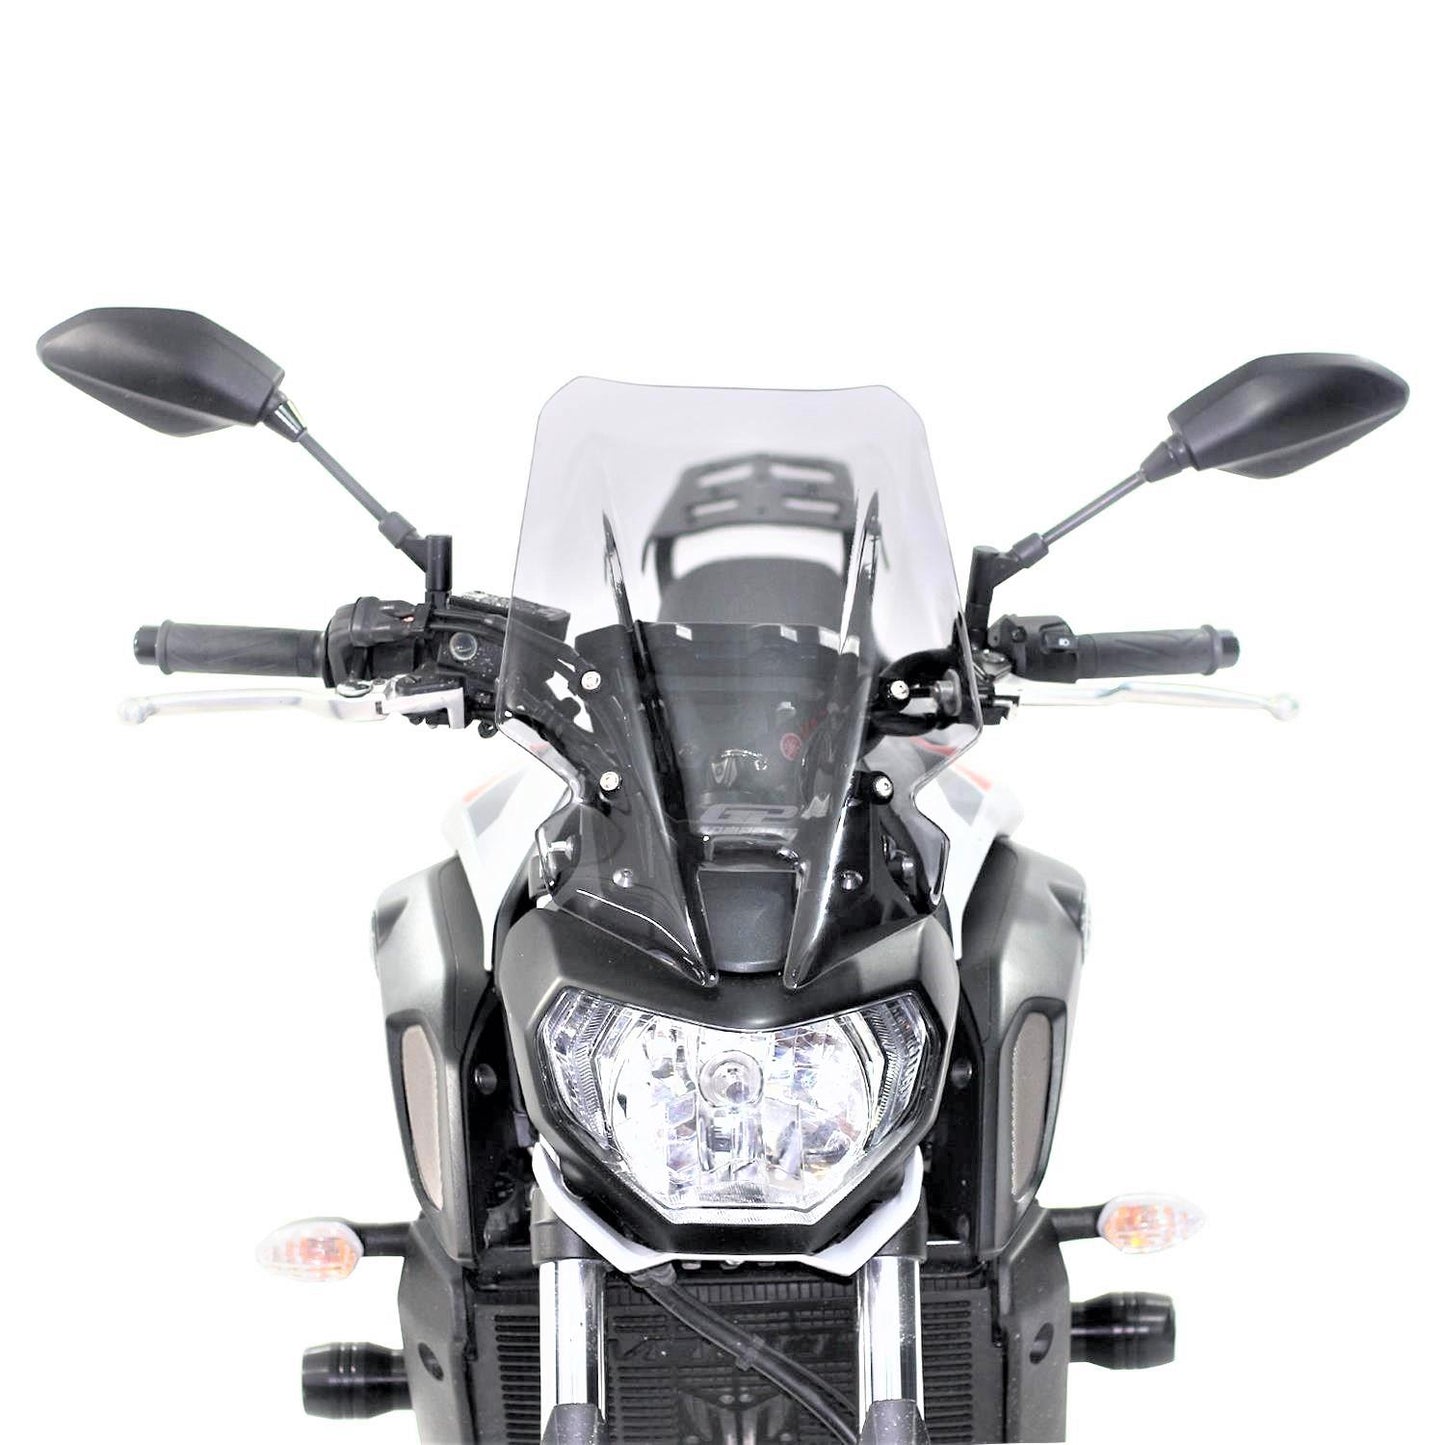 Yamaha MT07 windscreen 42cm  clear 18-20